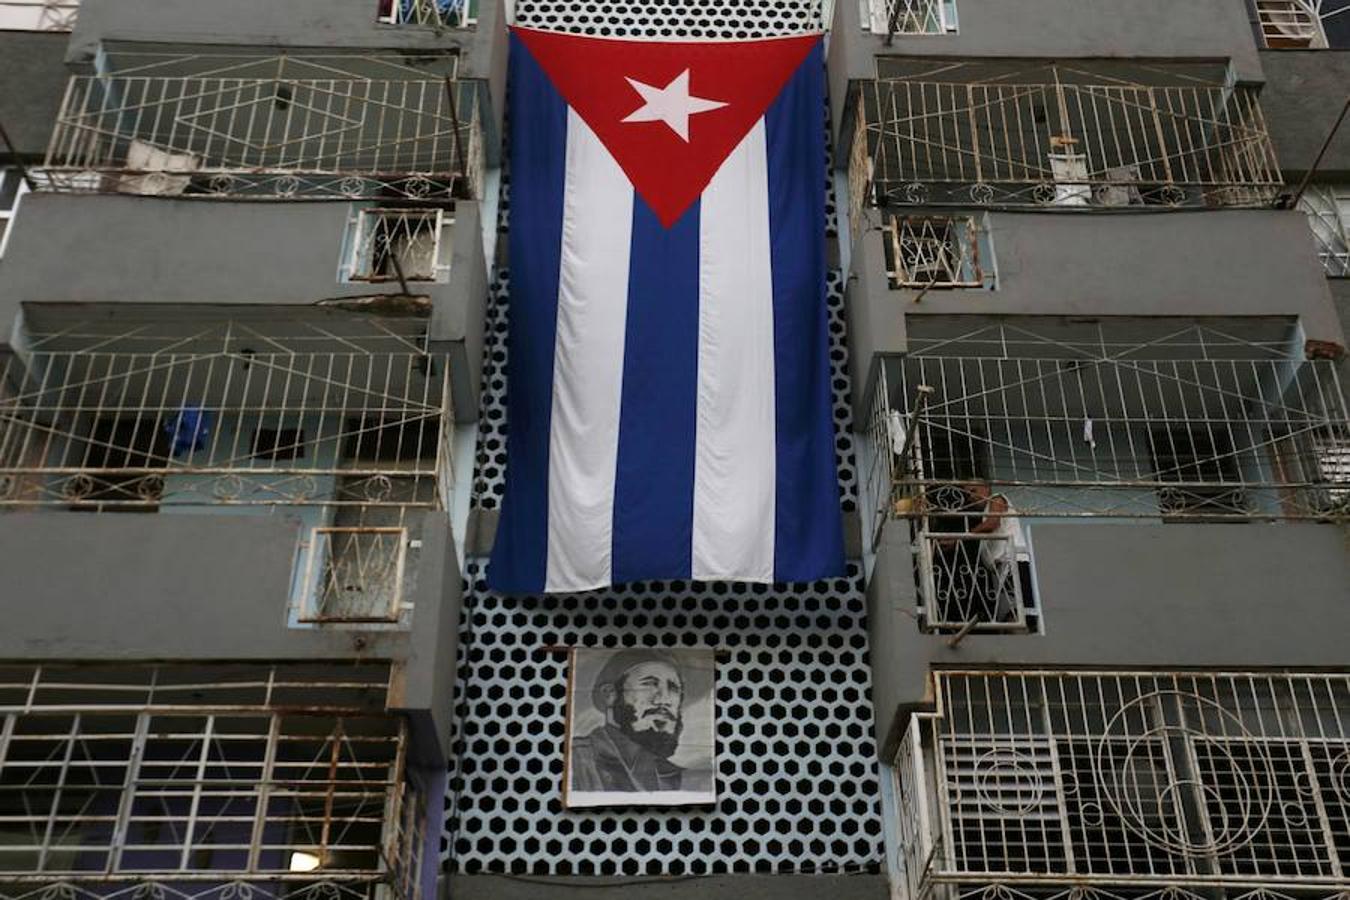 La «Caravana de la Libertad», como se ha denominado al traslado de los restos, llegó al parque Céspedes de la ciudad, precisamente el lugar donde el 1 de enero de 1959, fecha del triunfo de la Revolución, un victorioso Castro salió al balcón del Ayuntamiento. Todo el recorrido ha estado acompañado de la simbología revolucionaria cubana, como es habitual en Cuba